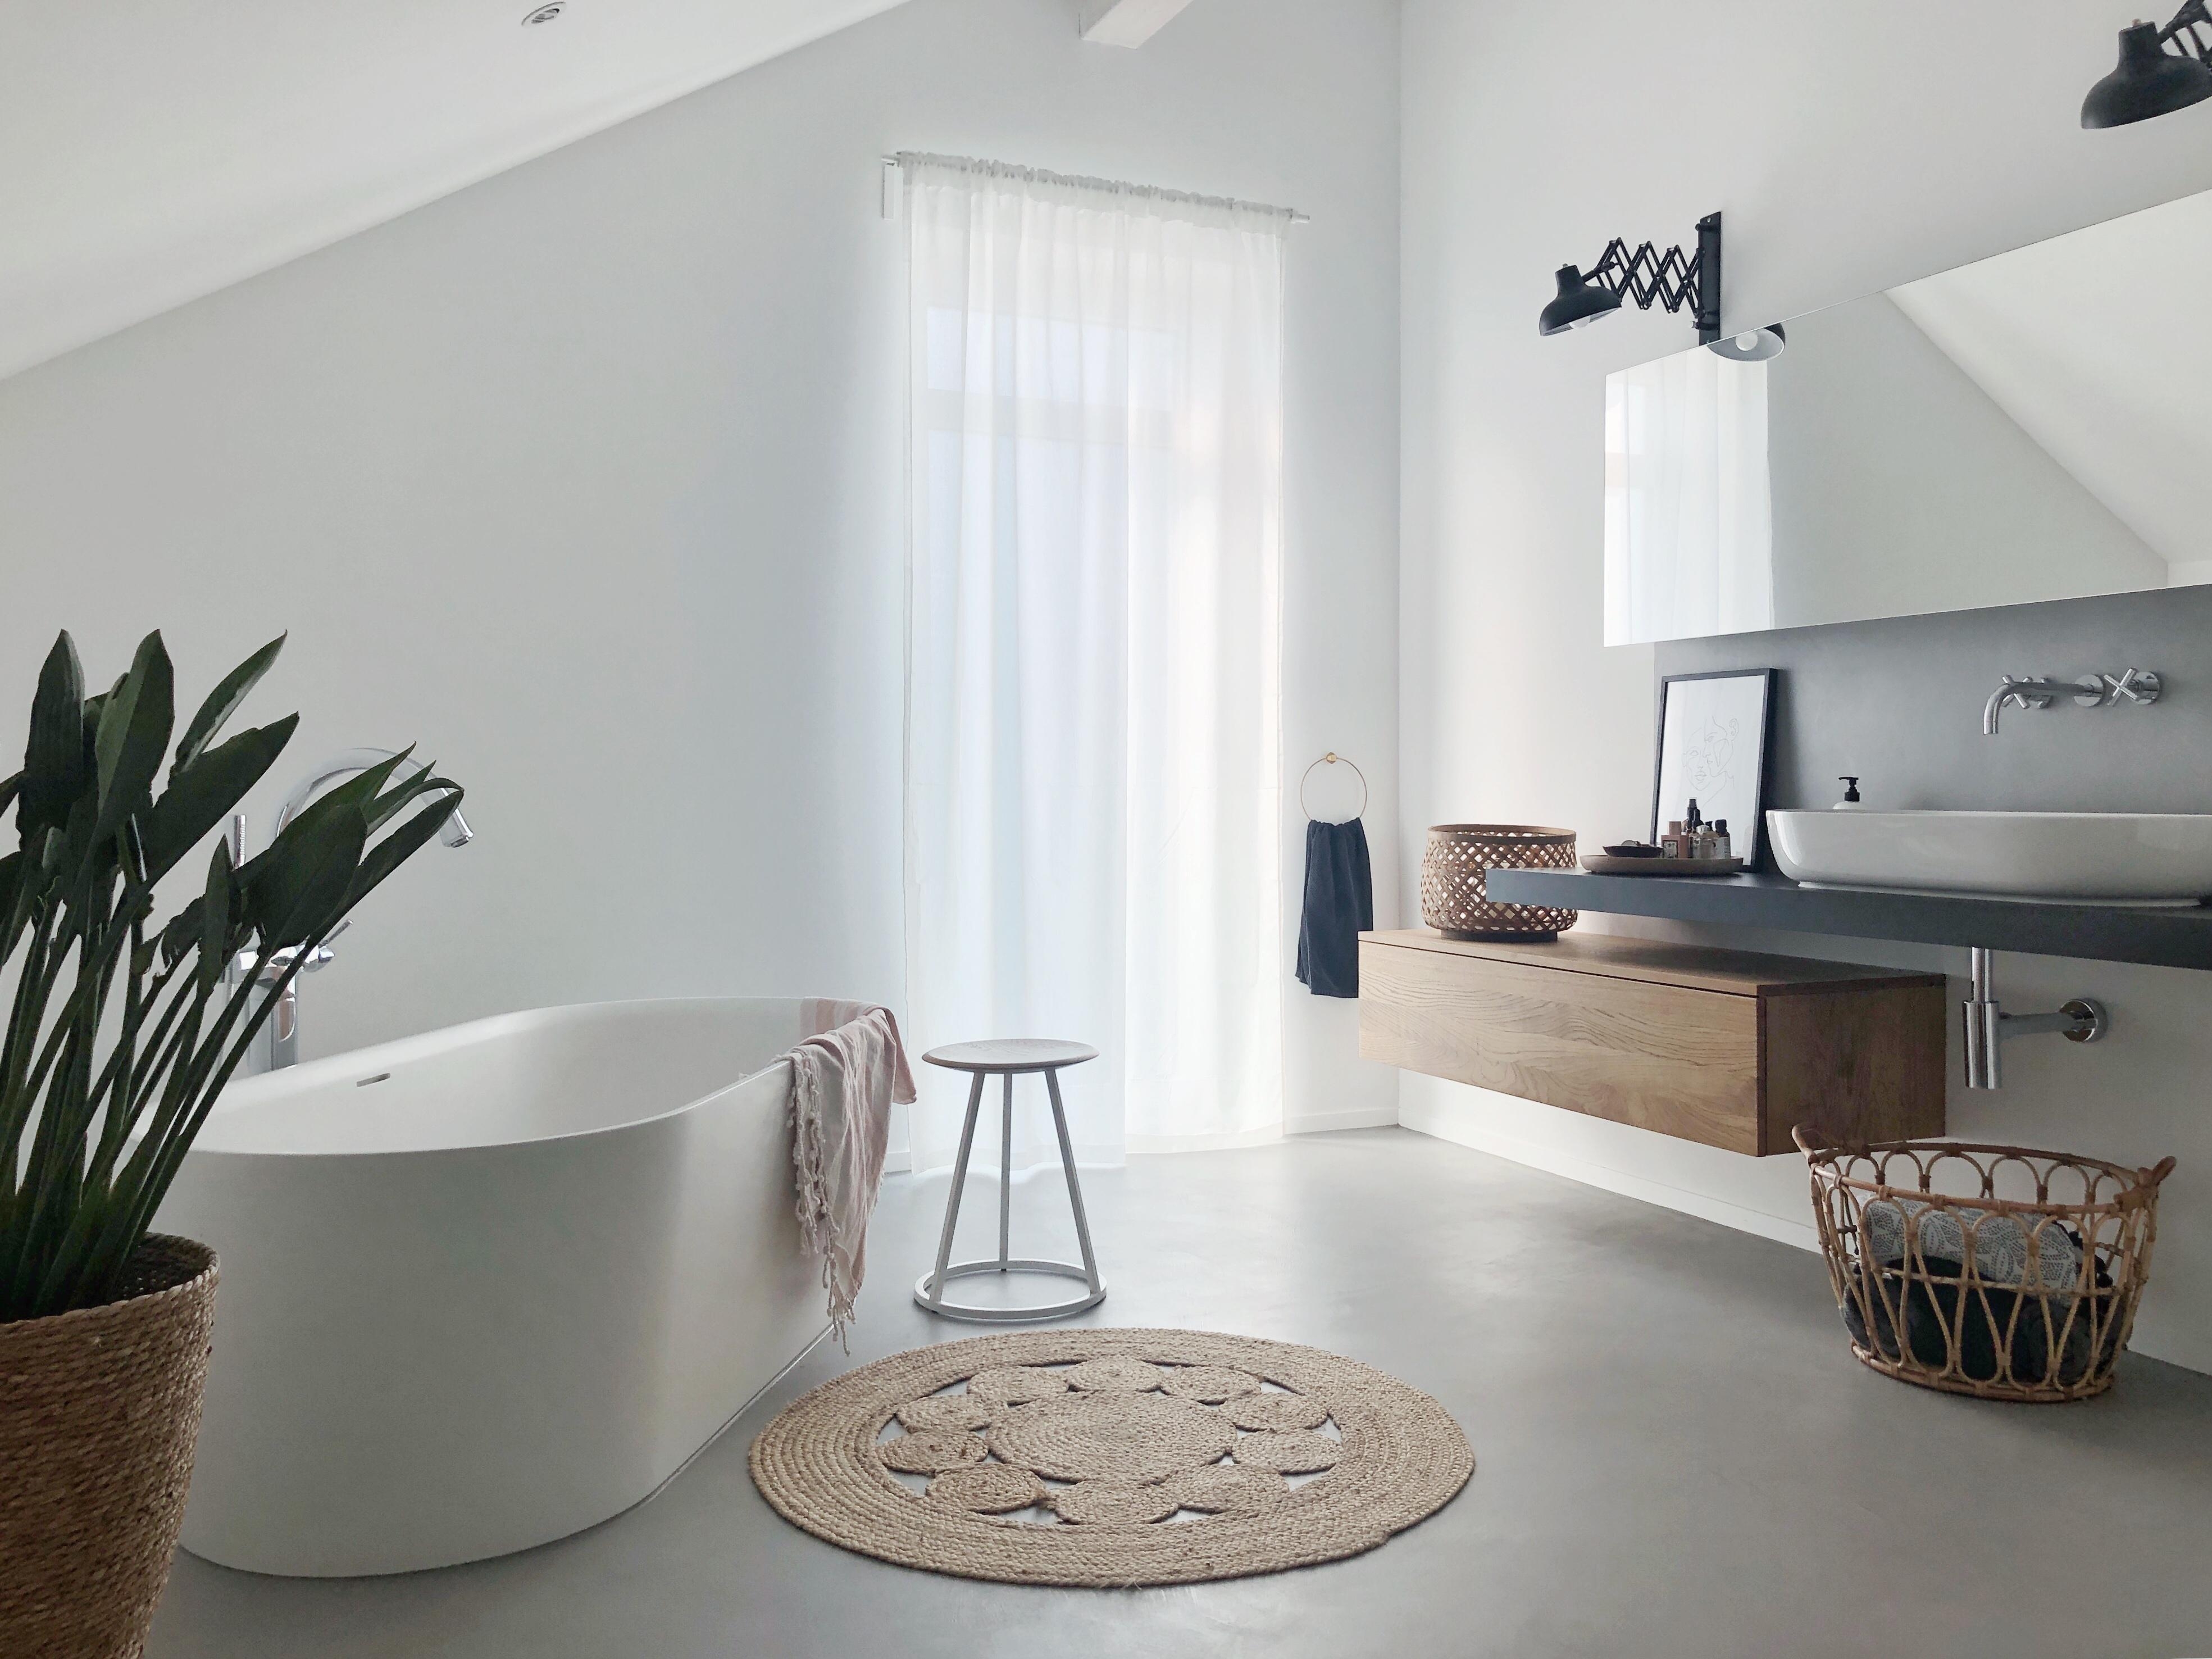 Unser Badezimmer in Beton und weiß!
#betoncire#beton#whitehome#easyliving#badezimmer#bad#bathroom